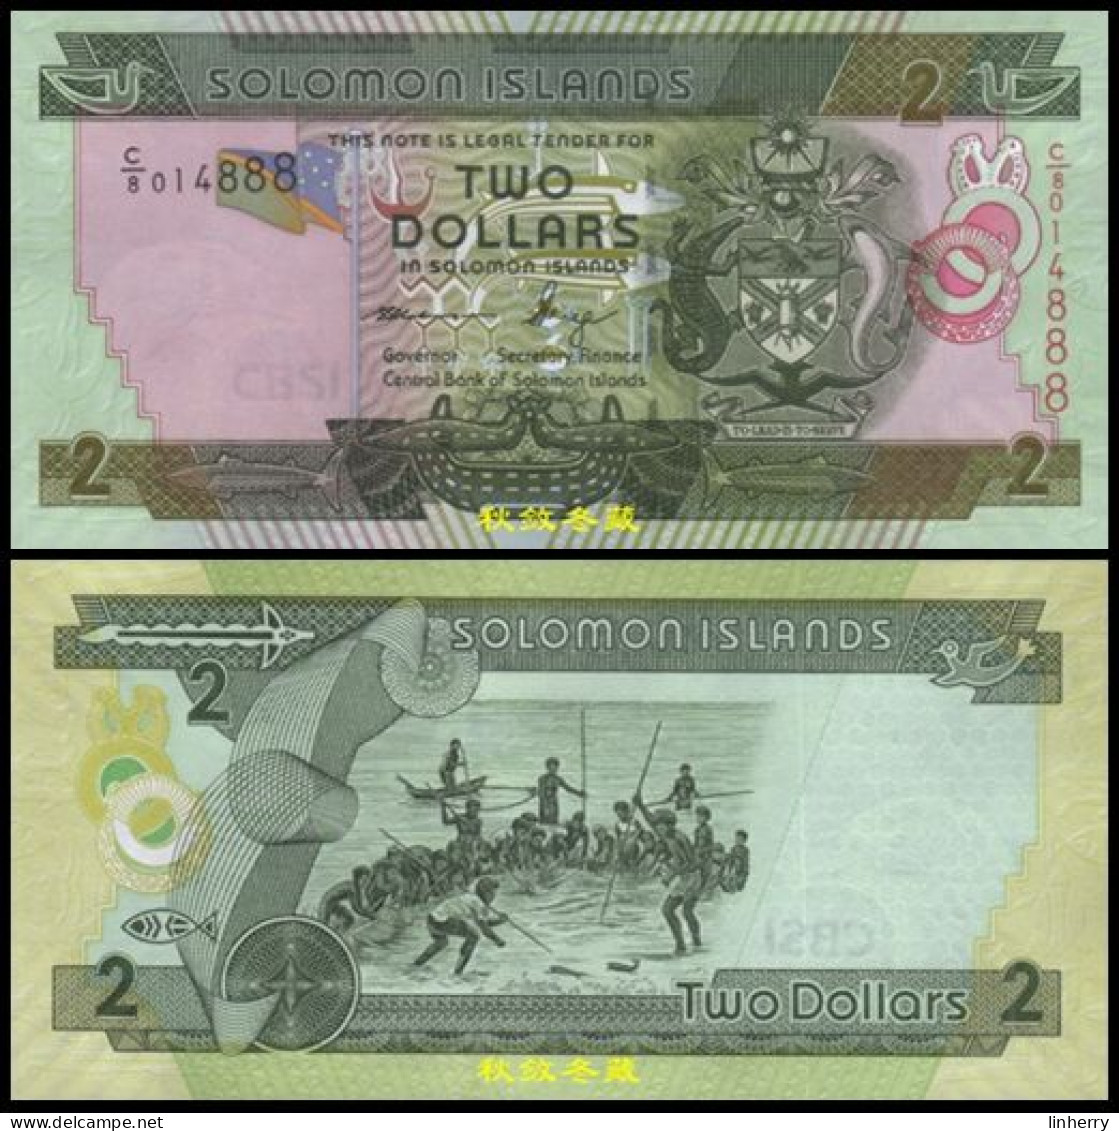 Solomon Islands 2 Dollars 2011, Paper, Lucky Number 888, UNC - Salomonseilanden